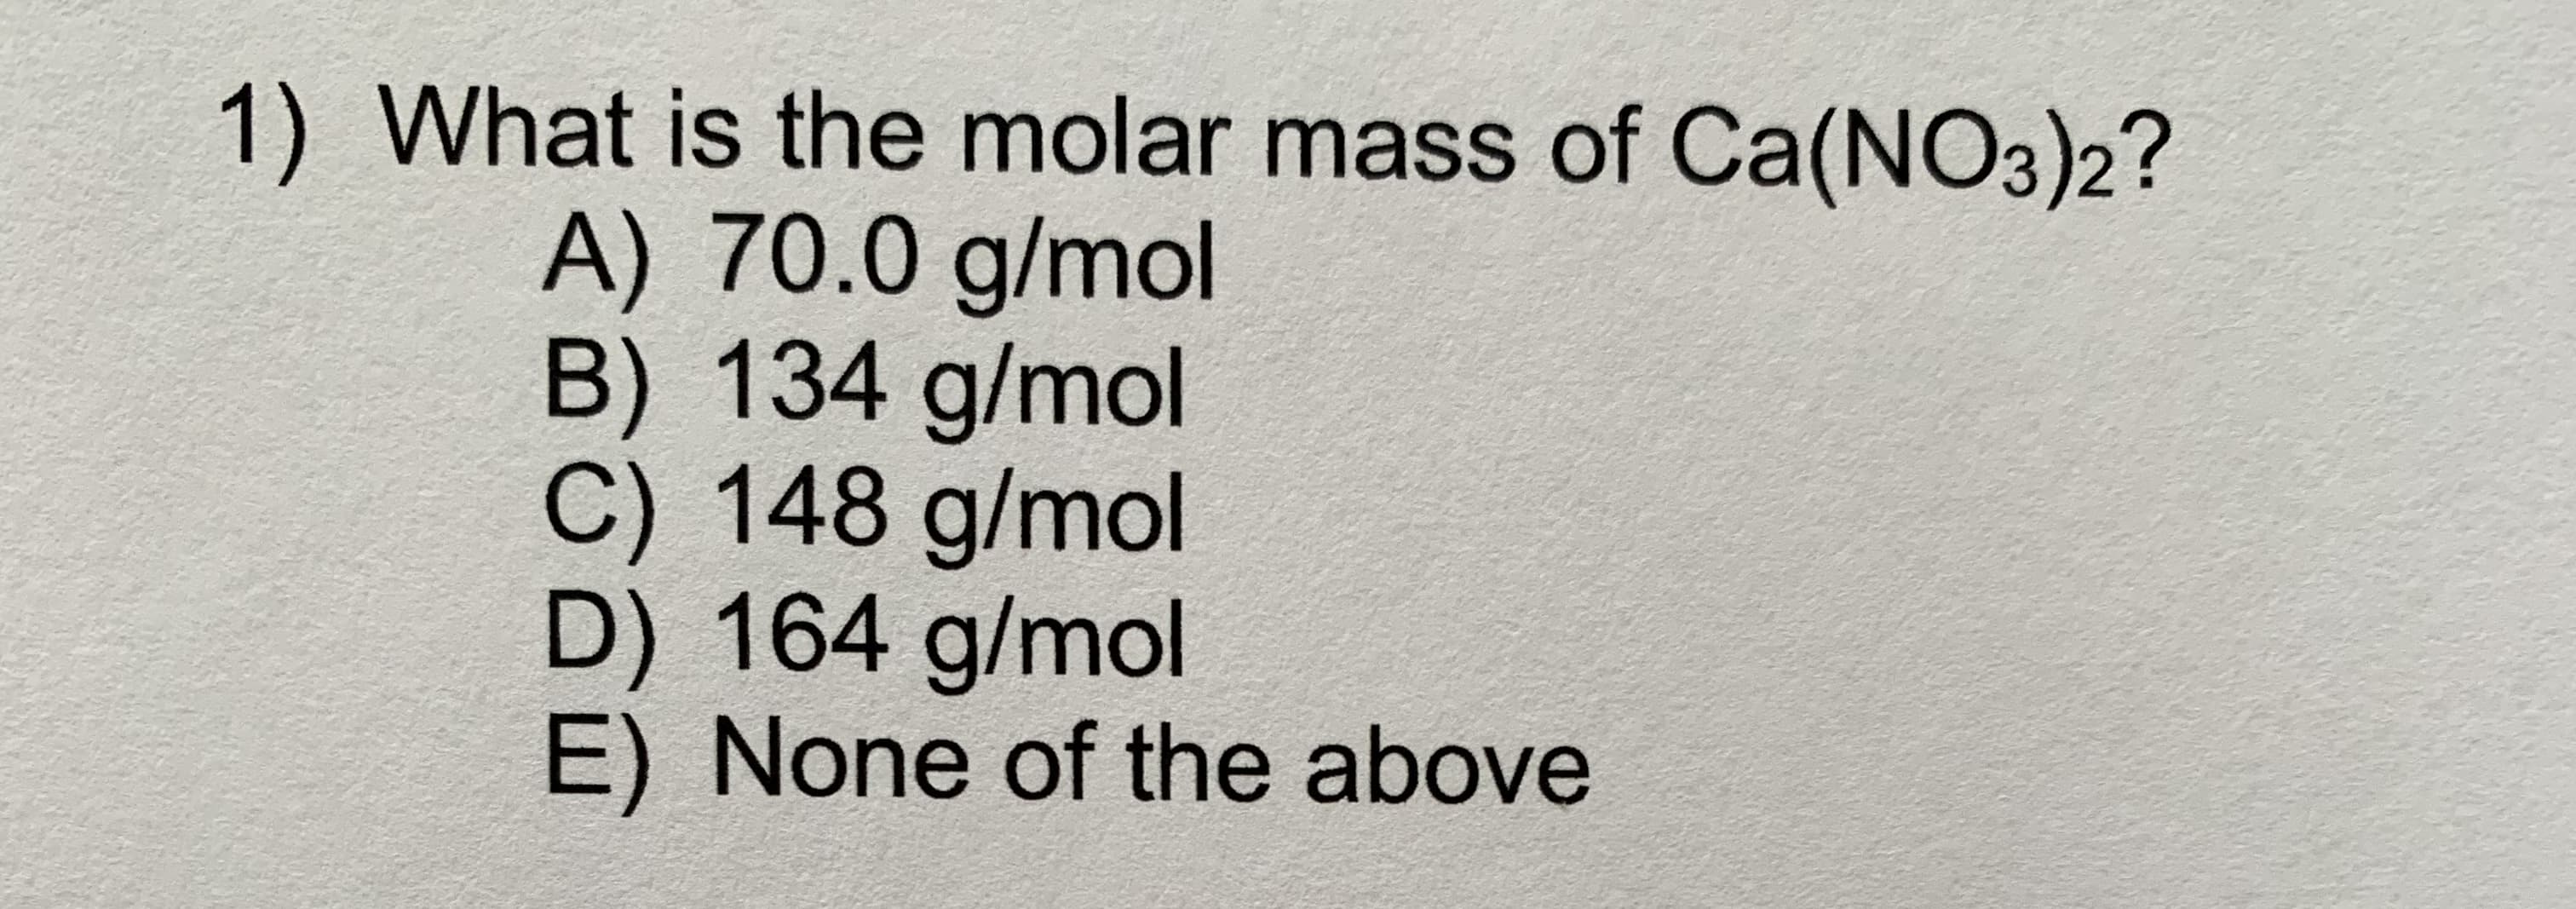 1) What is the molar mass of Ca(NO3)2?
A) 70.0 g/mol
B) 134 g/mol
C) 148 g/mol
D) 164 g/mol
E) None of the above
